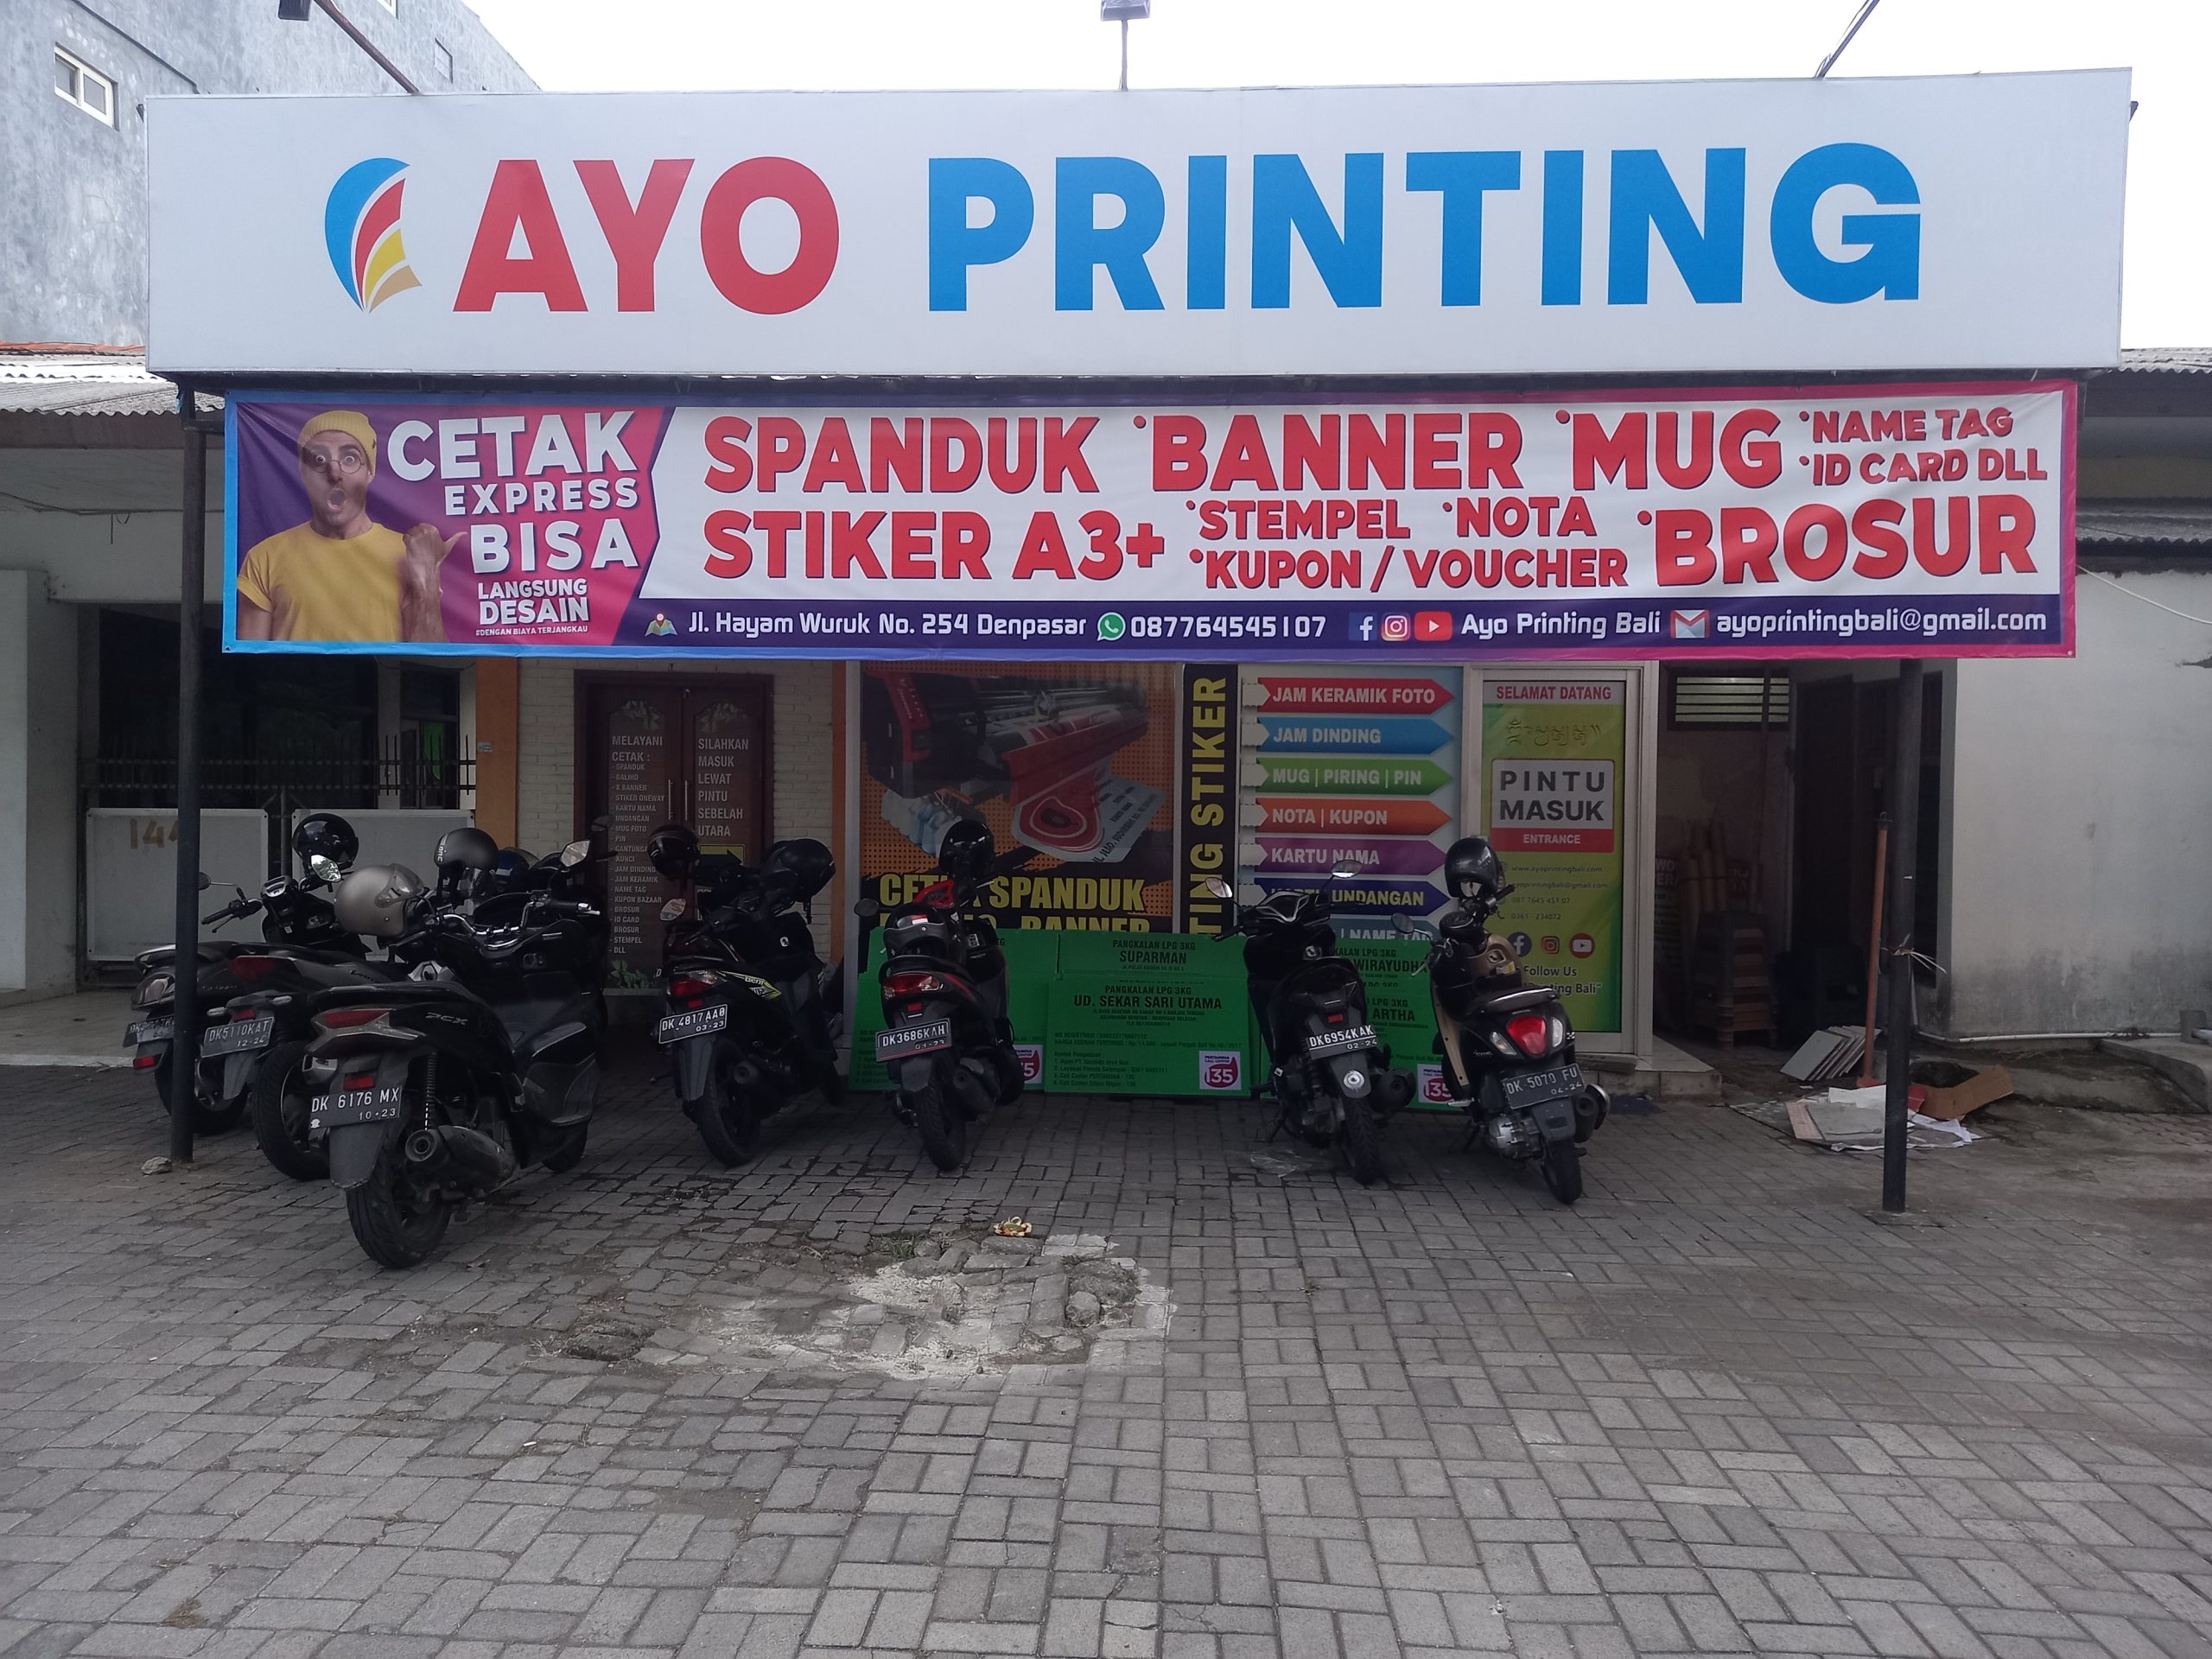 kantor-ayo-printing-bali disini bisa order online spanduk, banner, baliho, stiker dll.